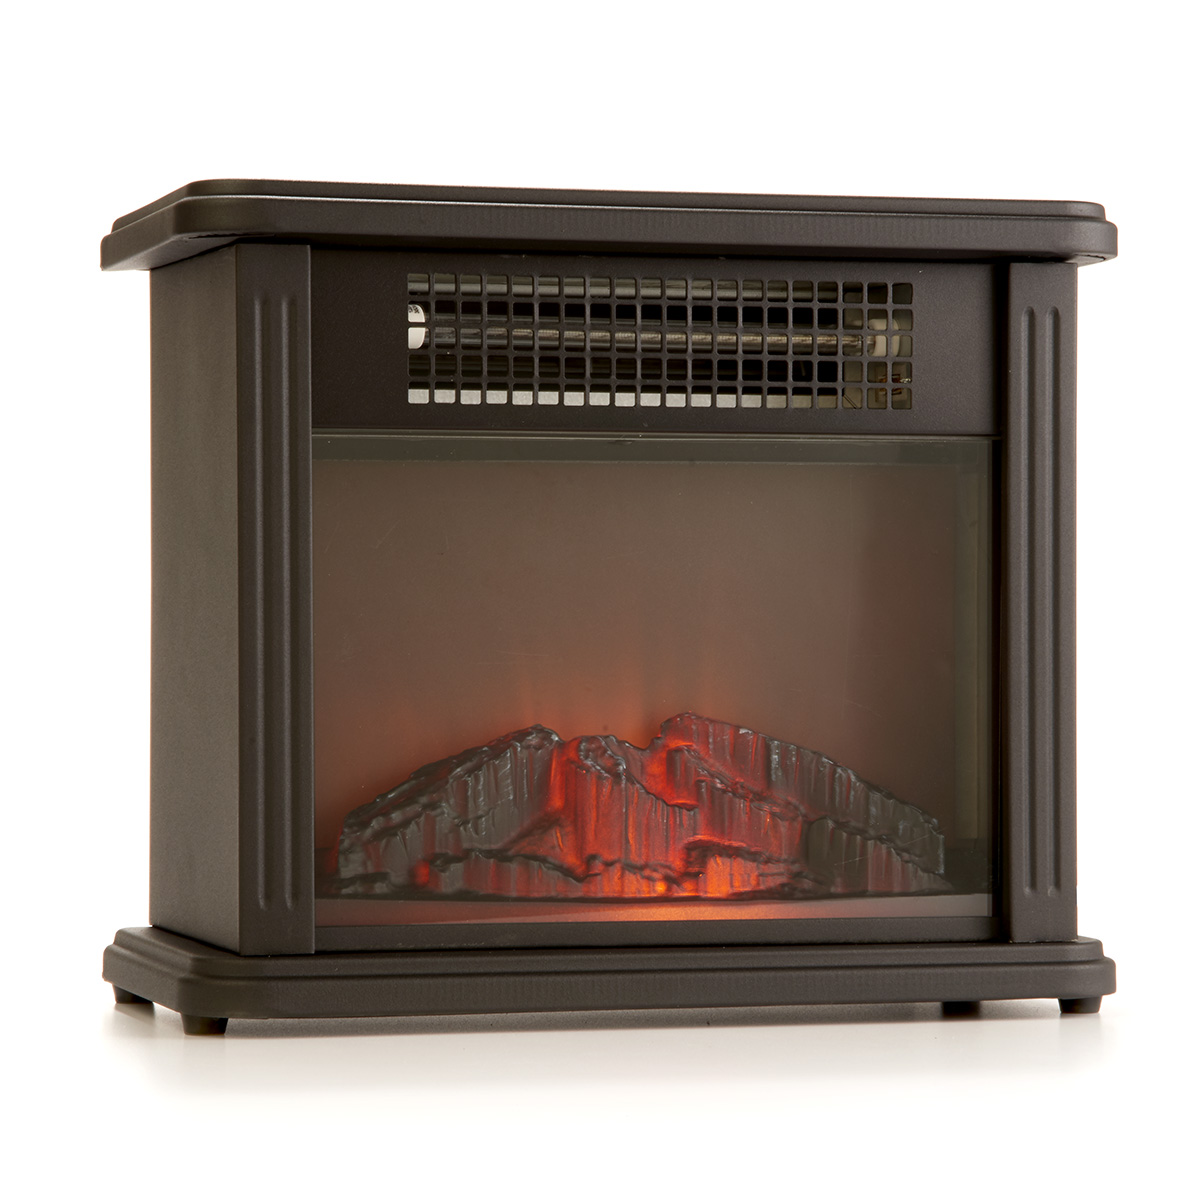 Comfort Zone(tm) 700 Watt Desktop Fireplace Heater